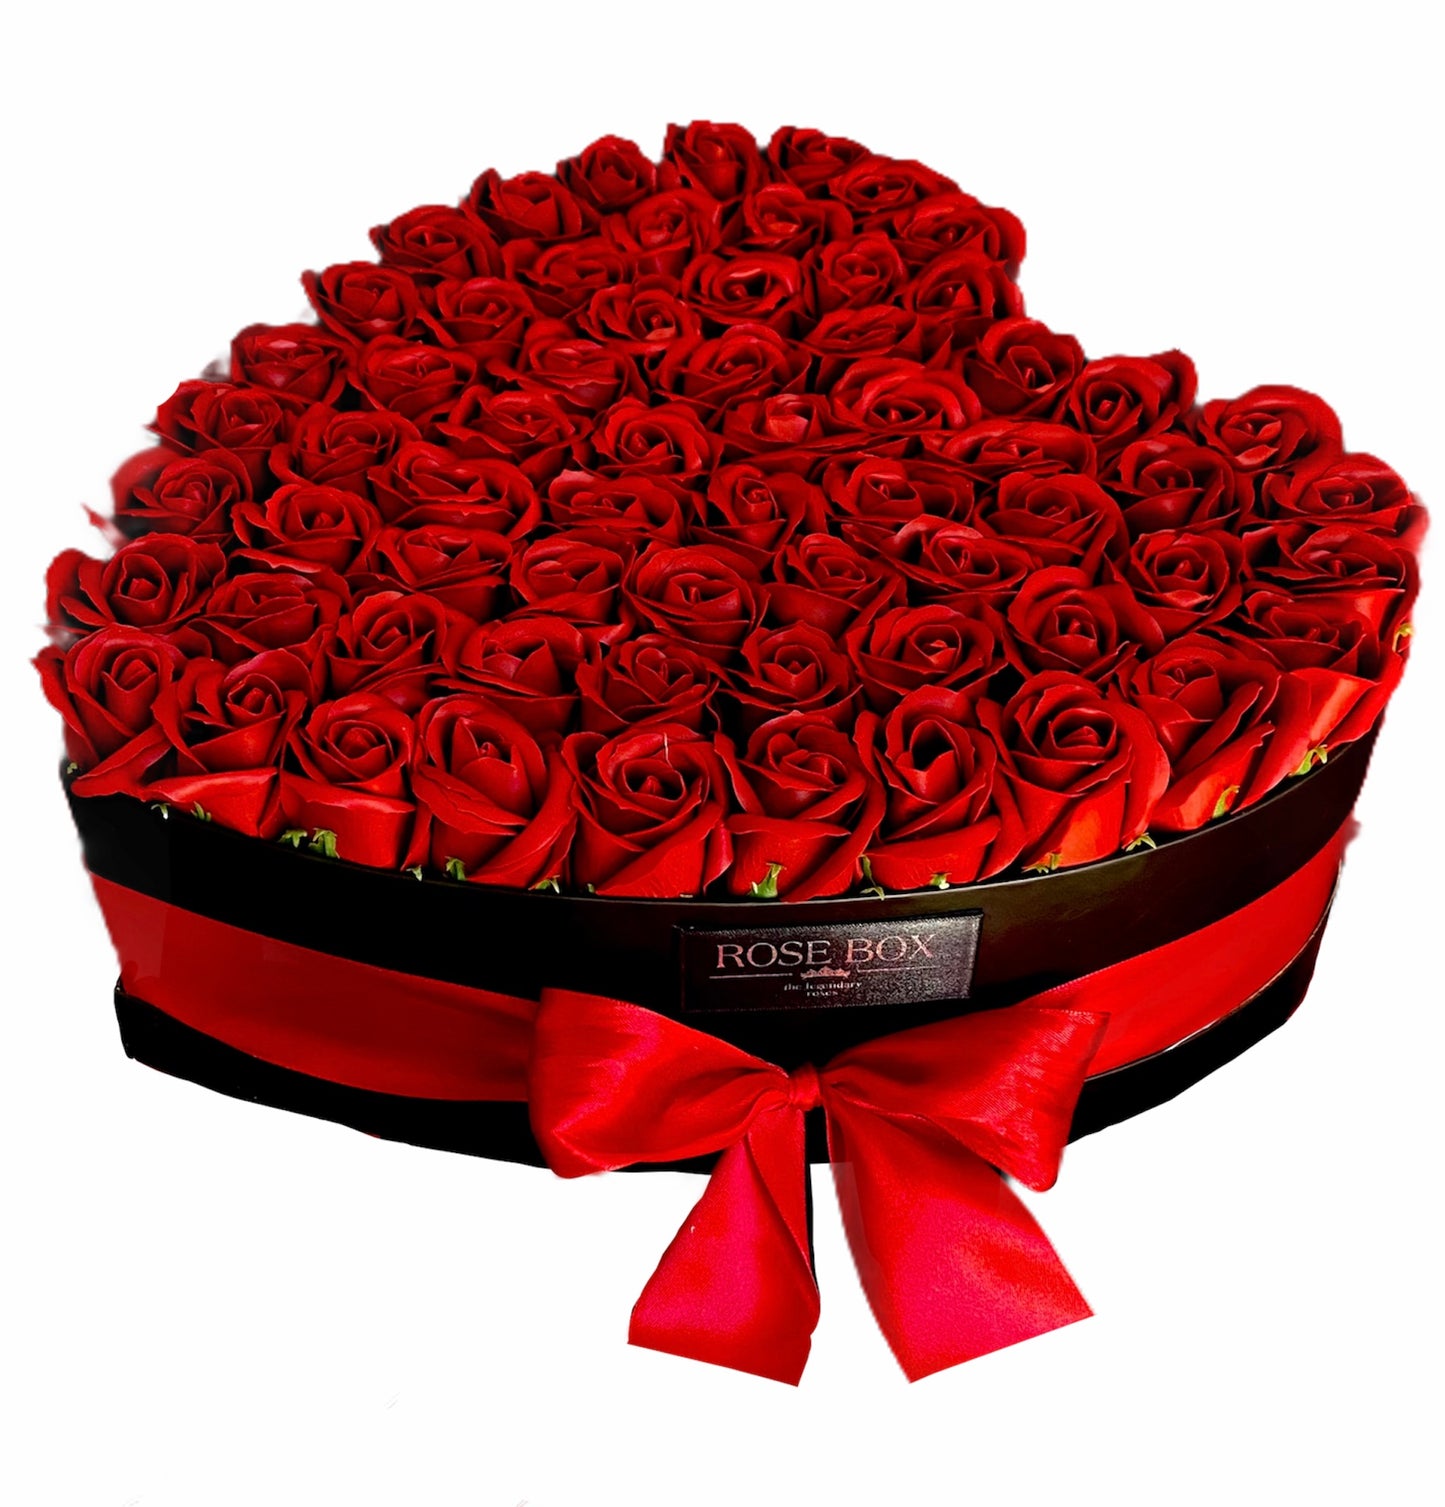 Cutie mare inimă neagră cu 65 trandafiri roșii